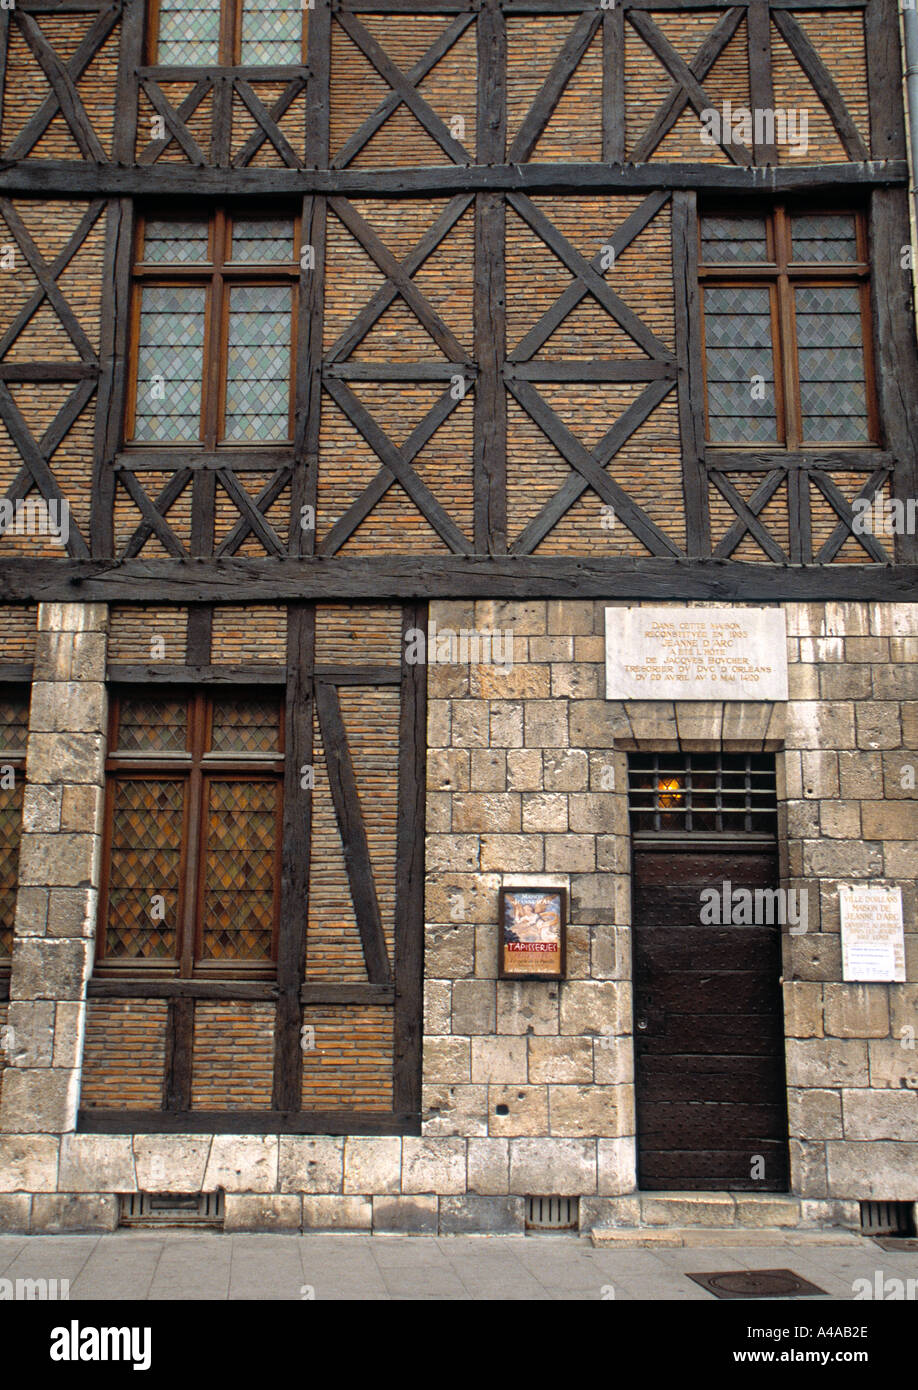 Maison de Jeanne D'Arc, Orleans, Loire Valley, France Stock Photo